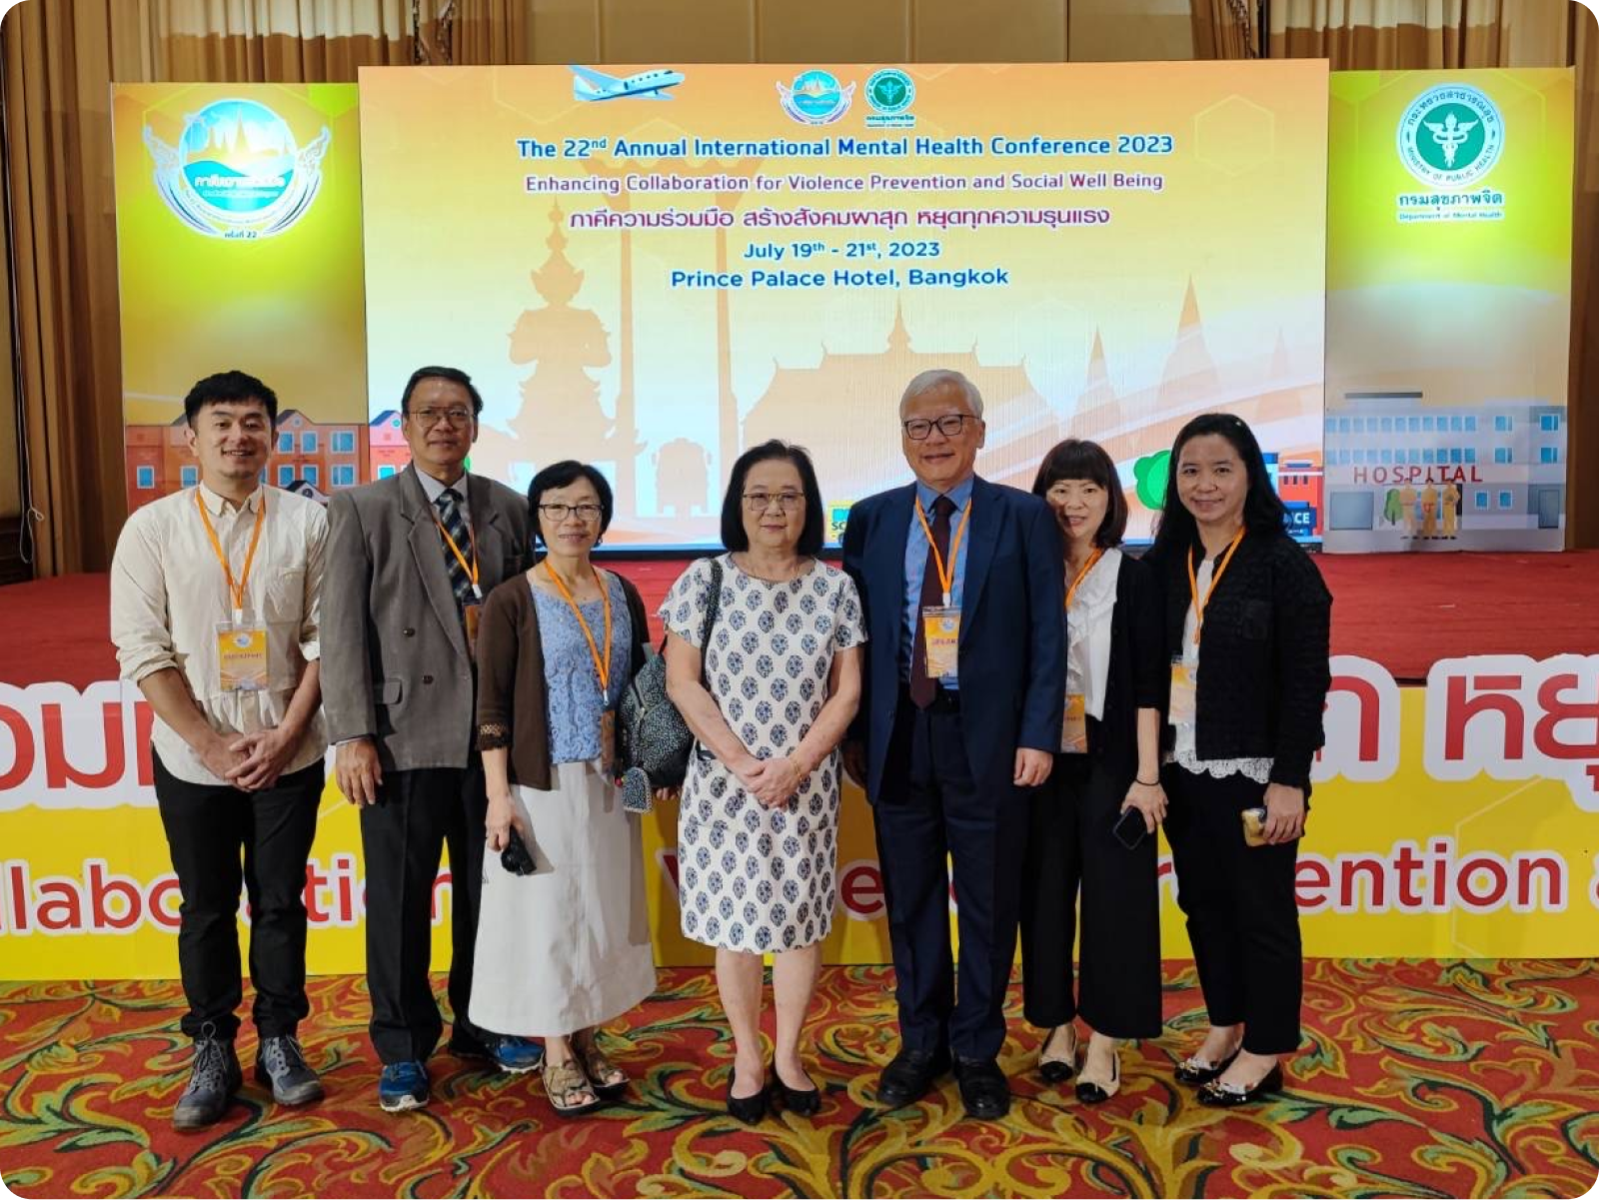 蔡篤堅教授帶領台灣代表團參與「泰國第 22 屆國際精神衛生研討會」